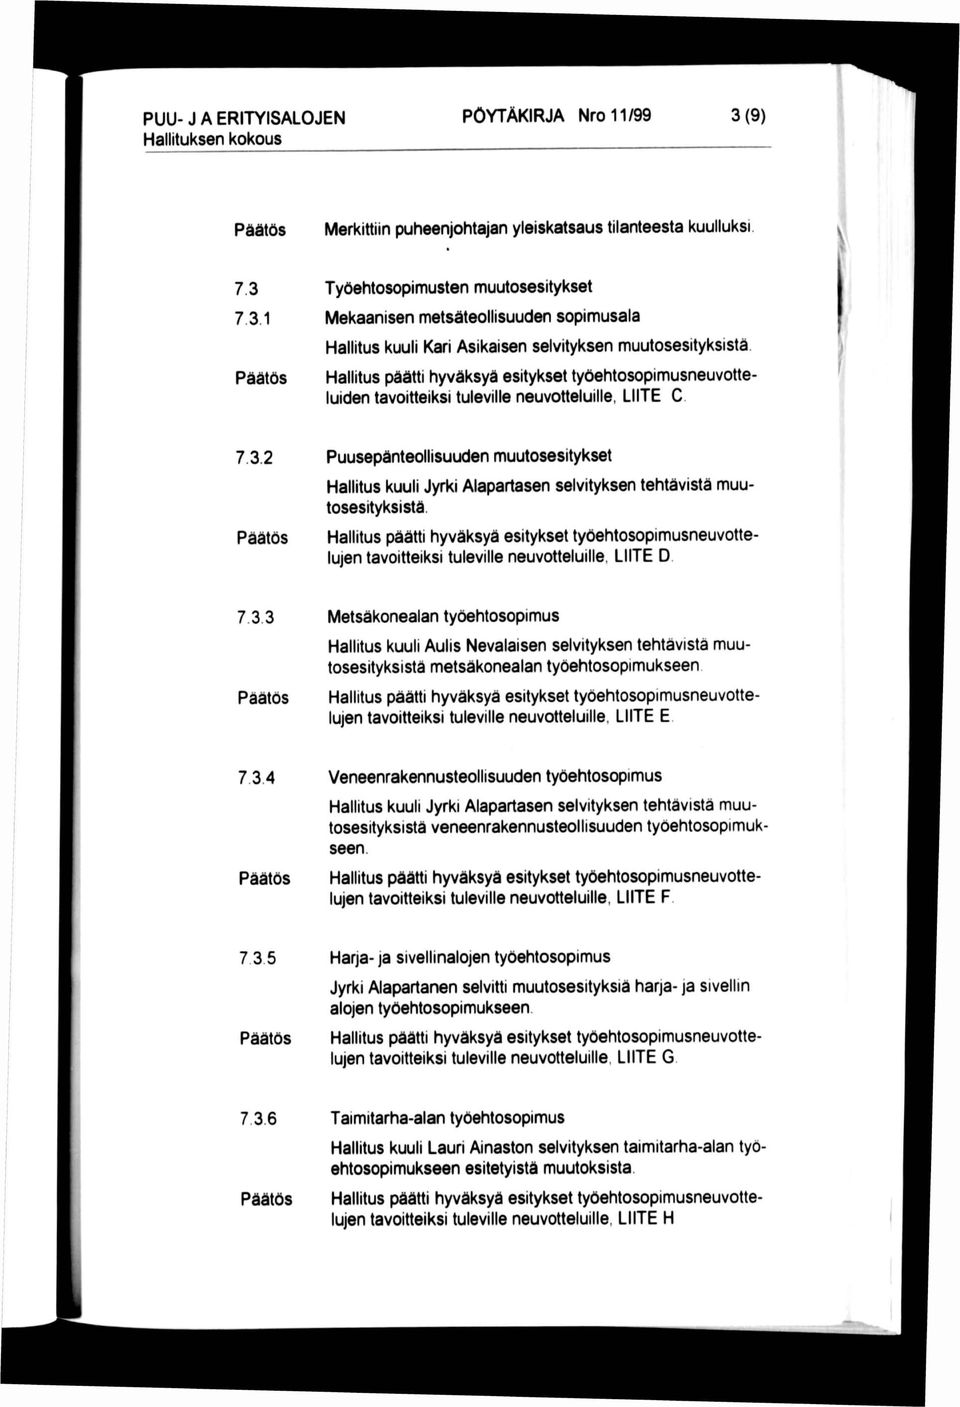 7.3.1 Päätös Työehtosopimusten muutosesitykset Mekaanisen metsäteollisuuden sopimusala Hallitus kuuli Kari Asikaisen selvityksen muutosesityksistä.